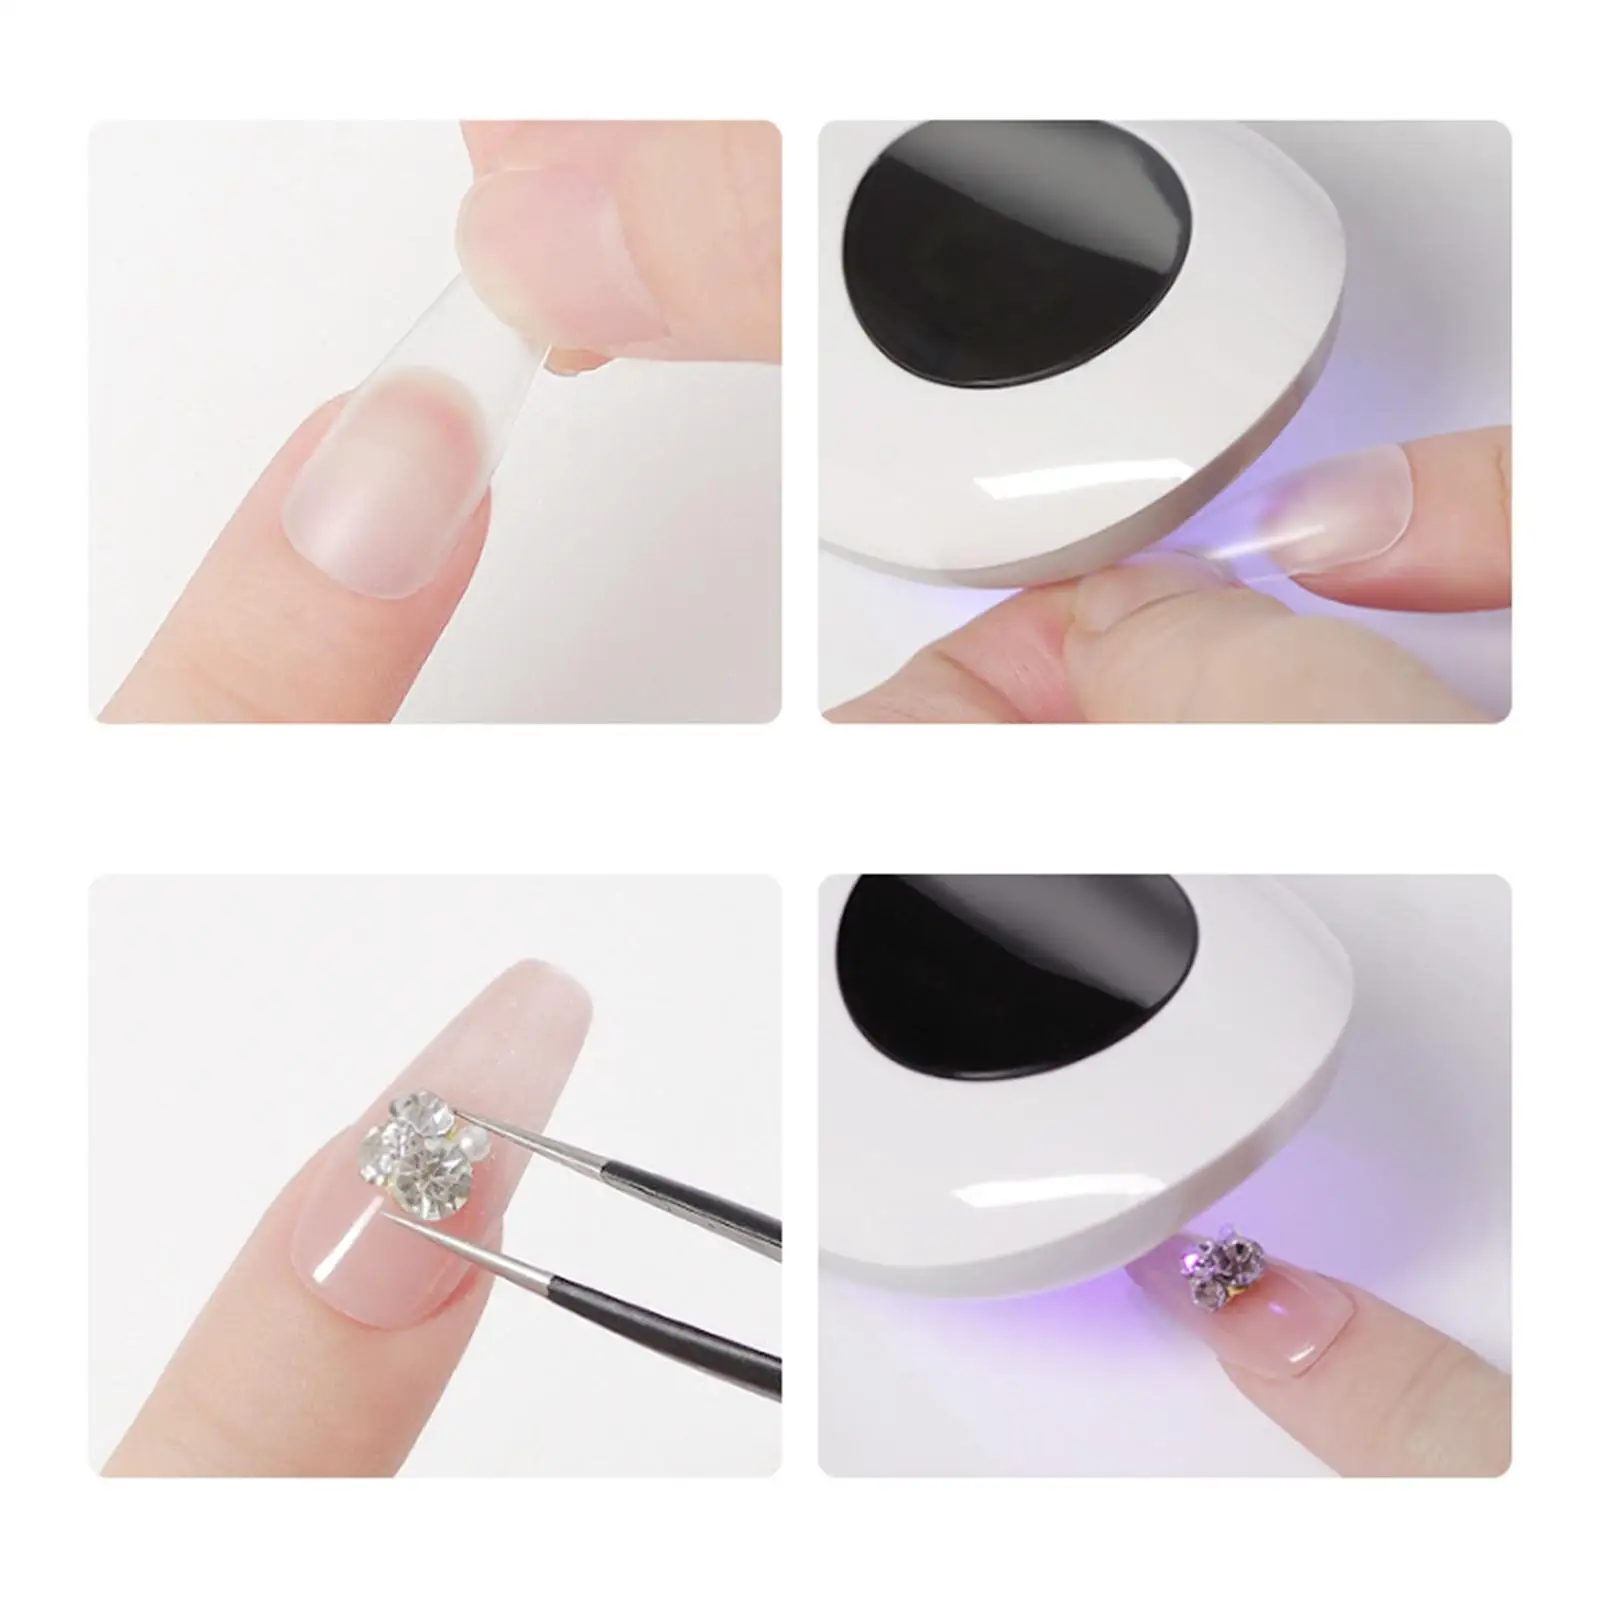 Portable Handheld LED Nail Lamp Nail Art Tools Cordless Manicure Nail Dryer Gel Nails Light Nail Polish Curing Lamp DIY Home